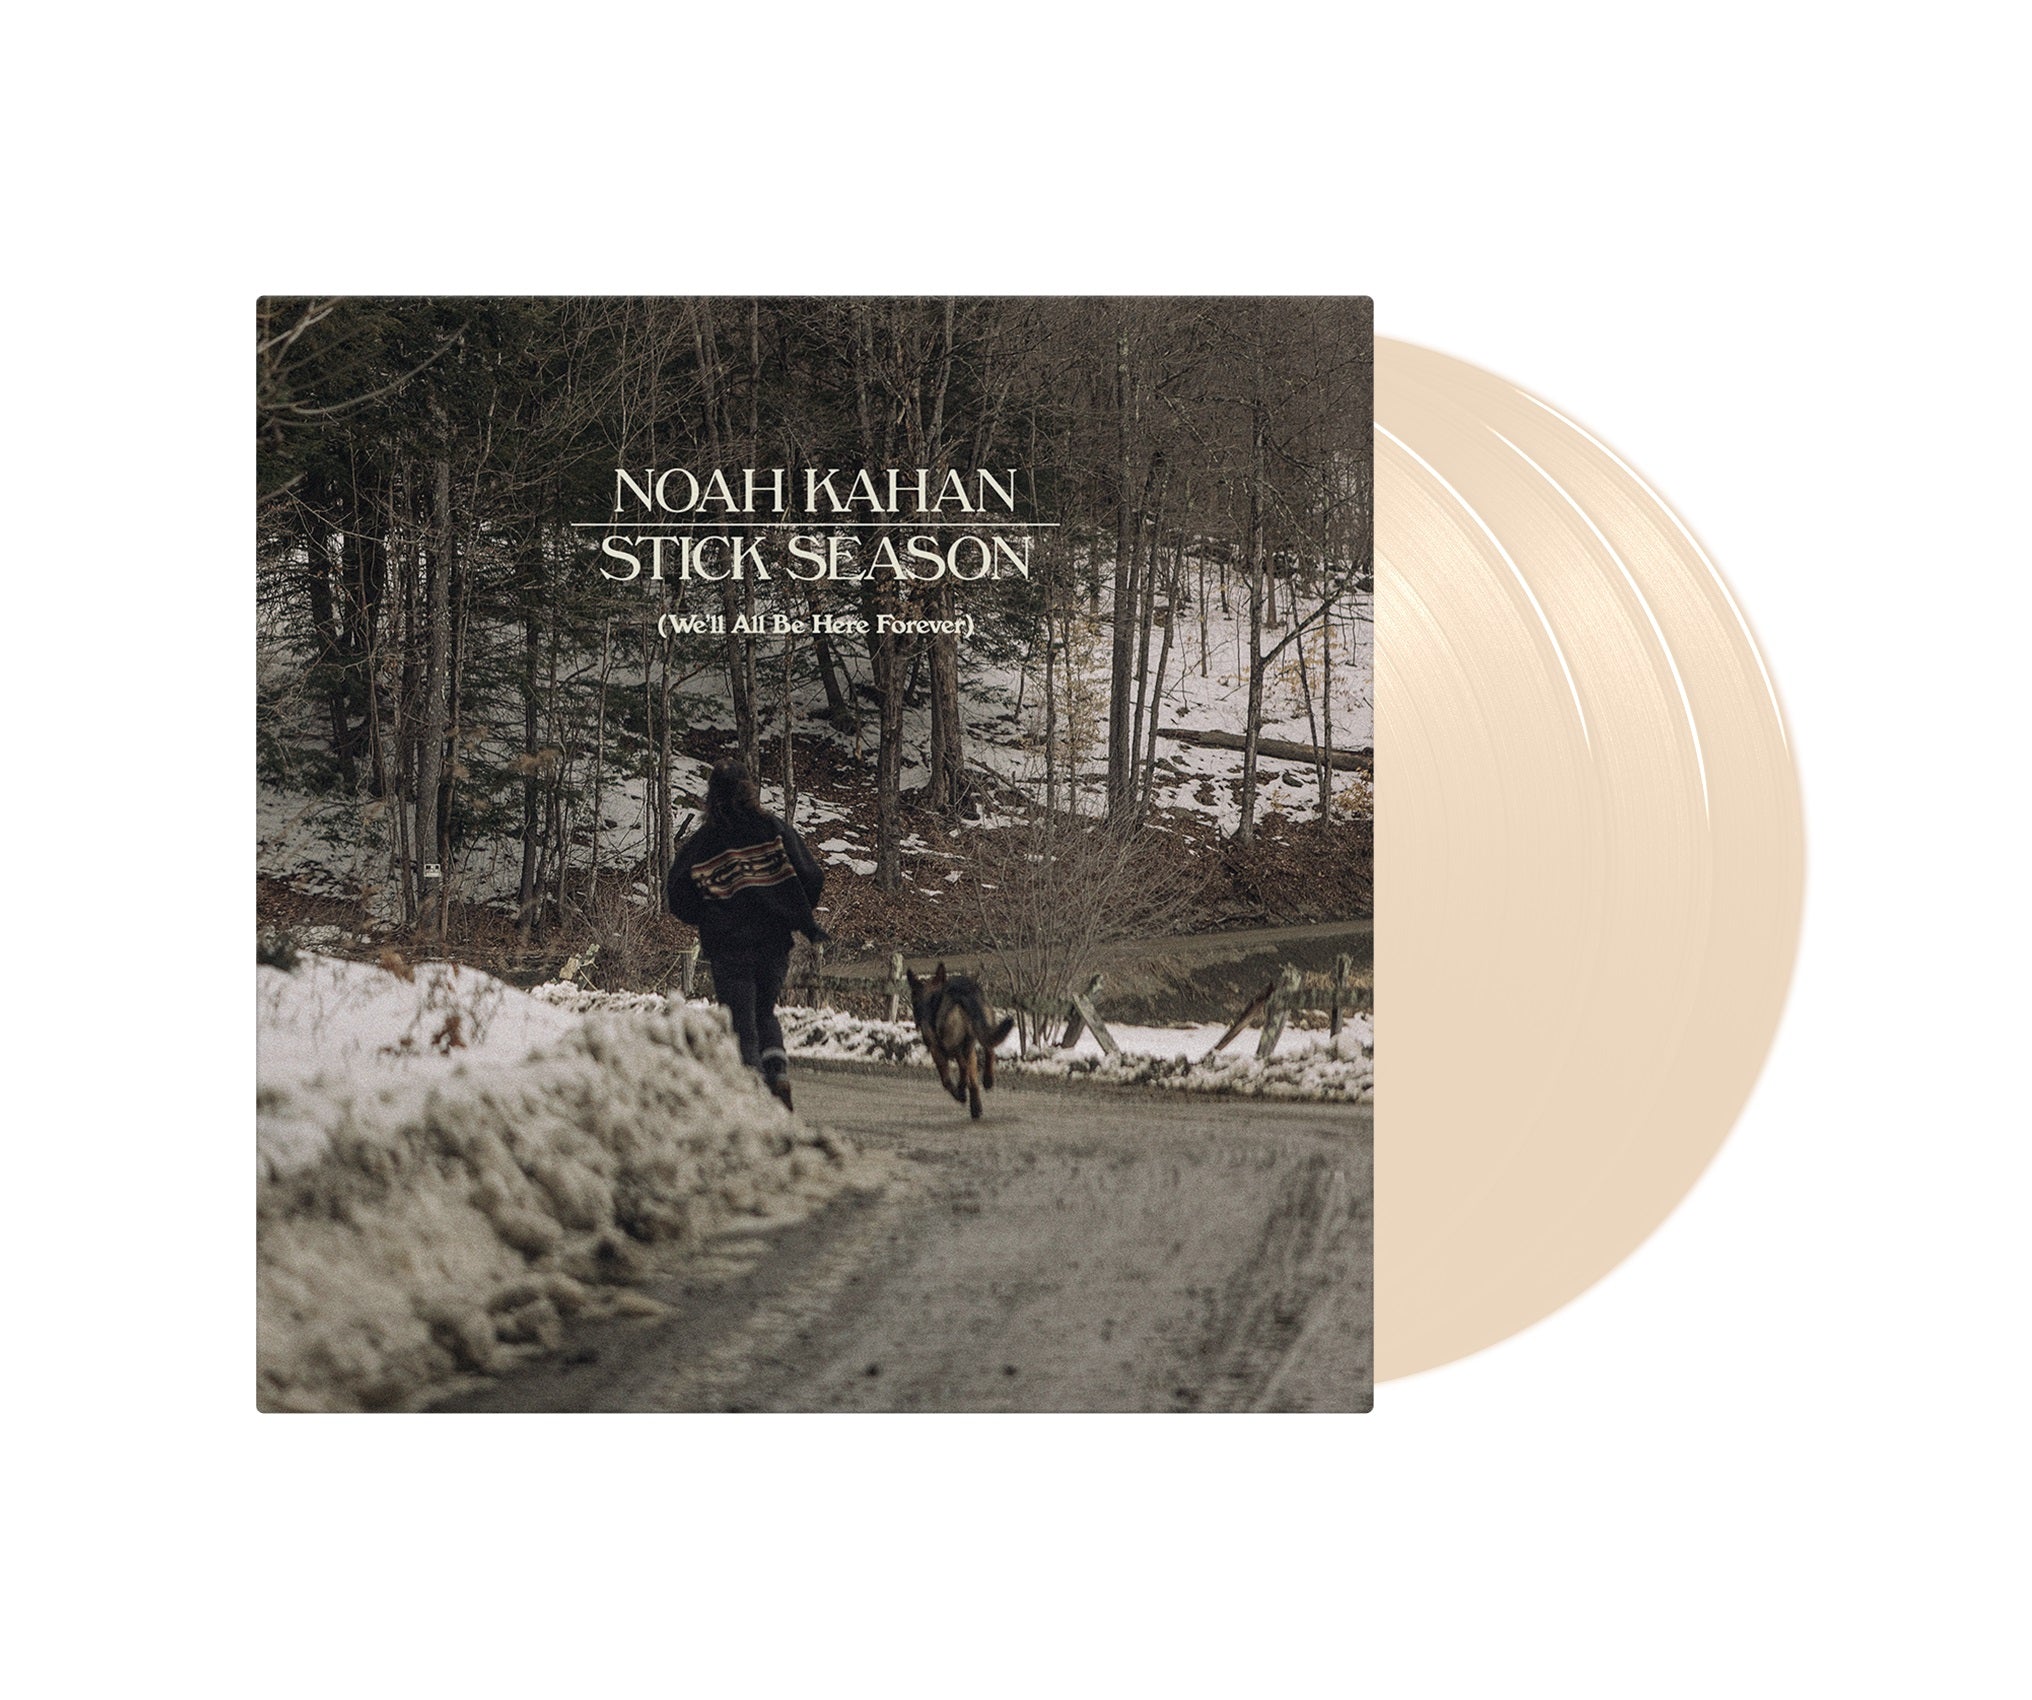 Noah Kahan - Stick Season (We'll All Be Here Forever) [Indie-Exclusive 3-lp Bone Vinyl]